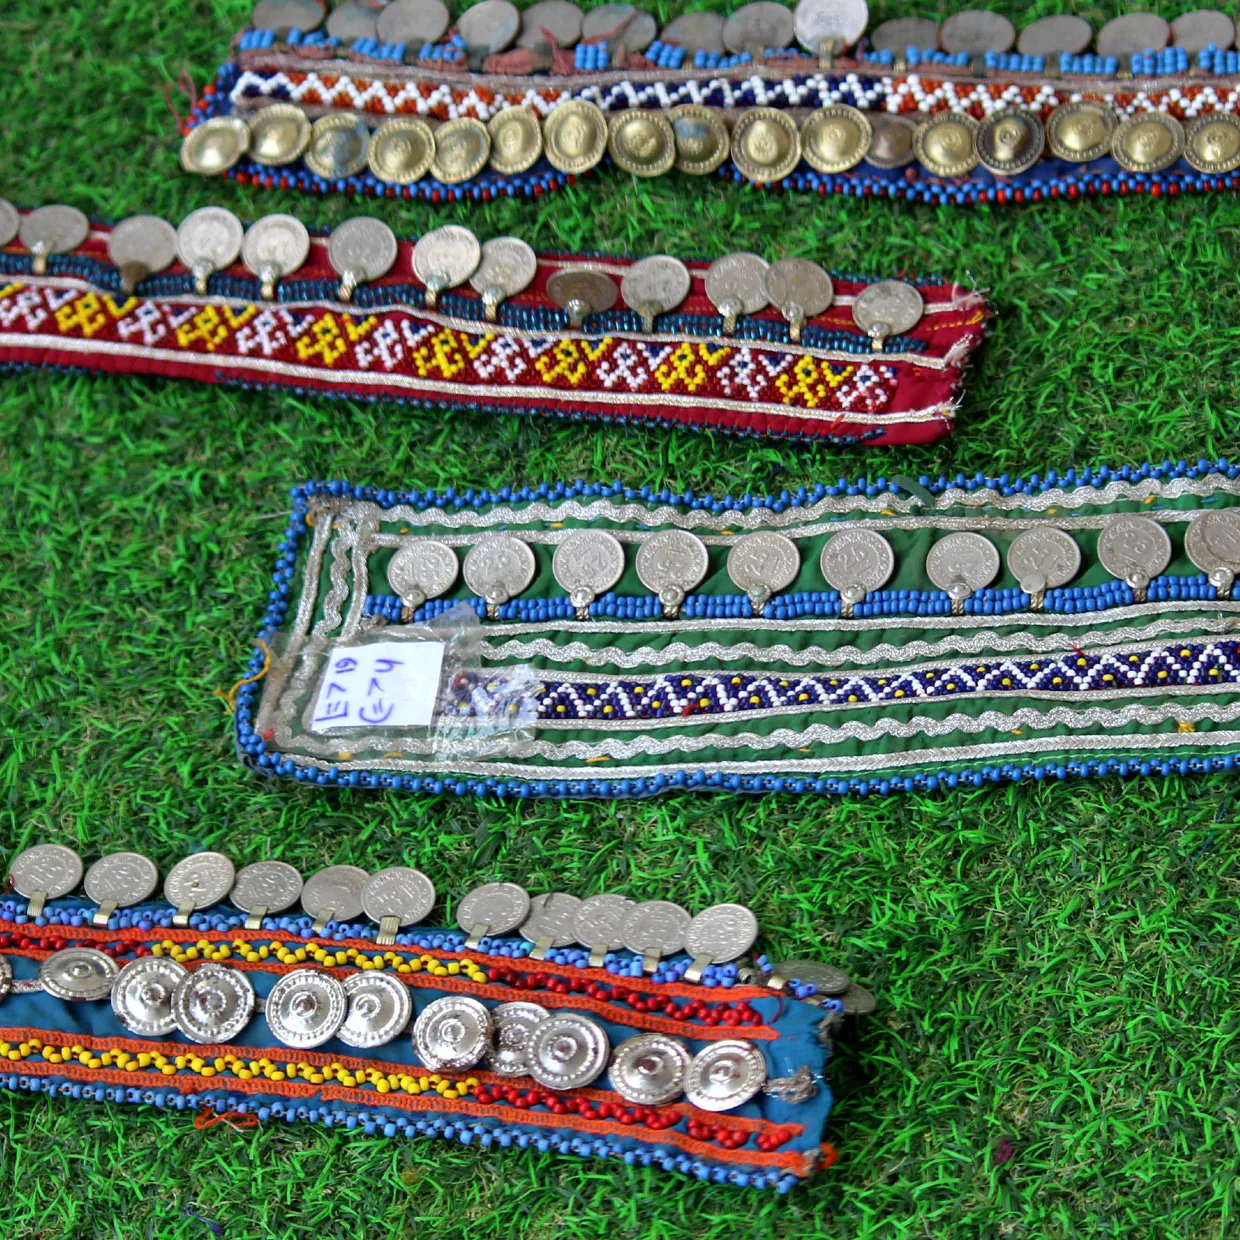 Banjara-حزام قديم هندي قديم, حزام قديم للعملات المعدنية